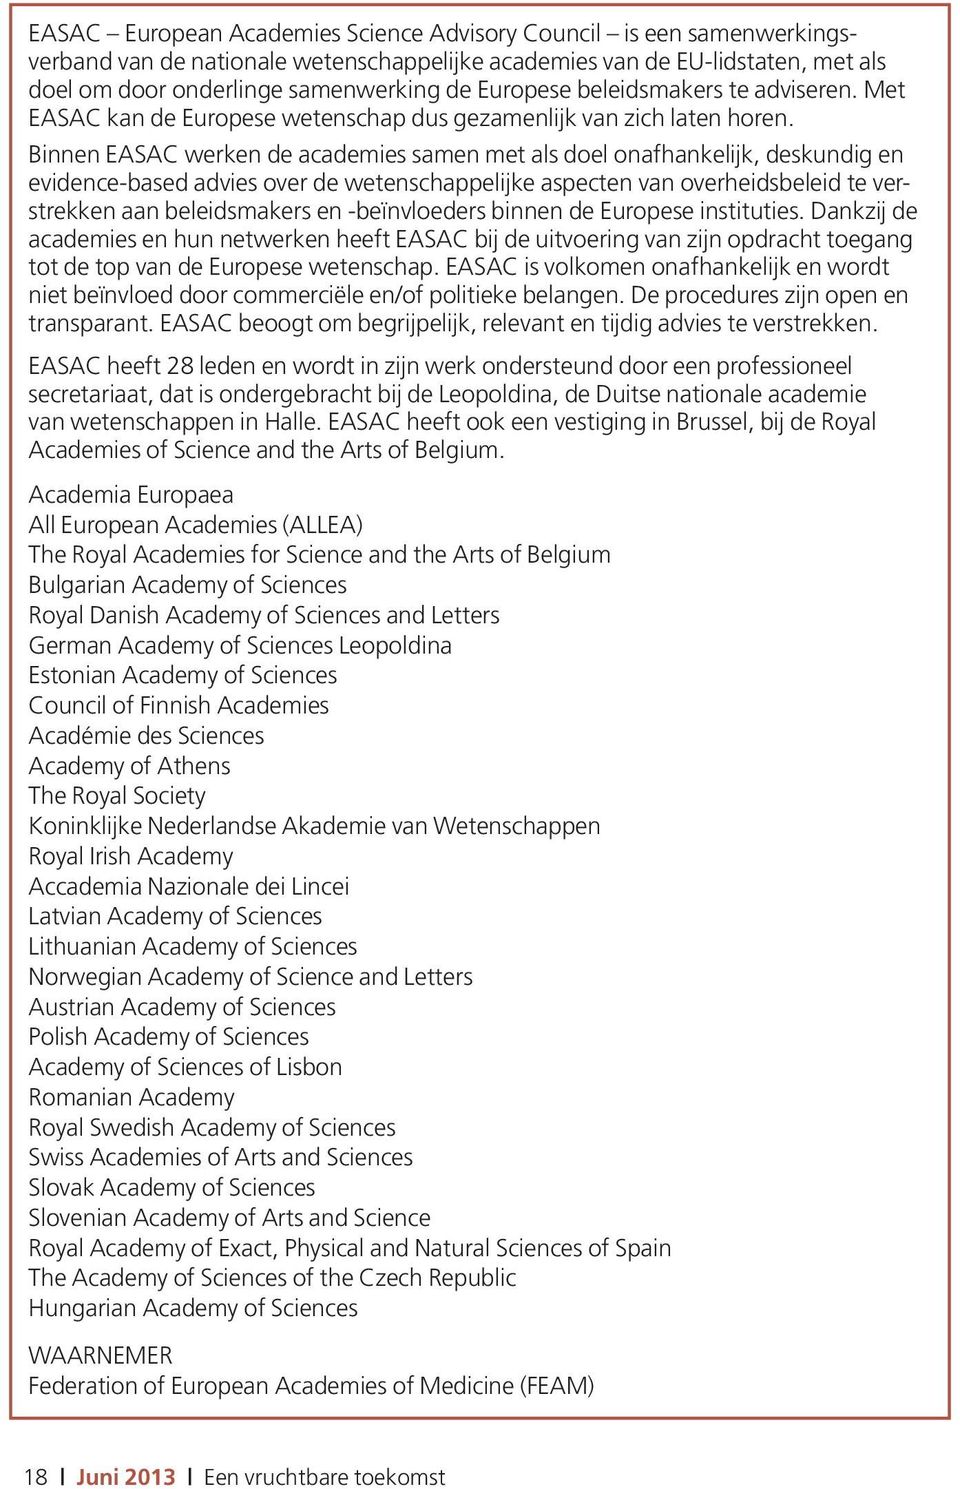 Binnen EASAC werken de academies samen met als doel onafhankelijk, deskundig en evidence-based advies over de wetenschappelijke aspecten van overheidsbeleid te verstrekken aan beleidsmakers en